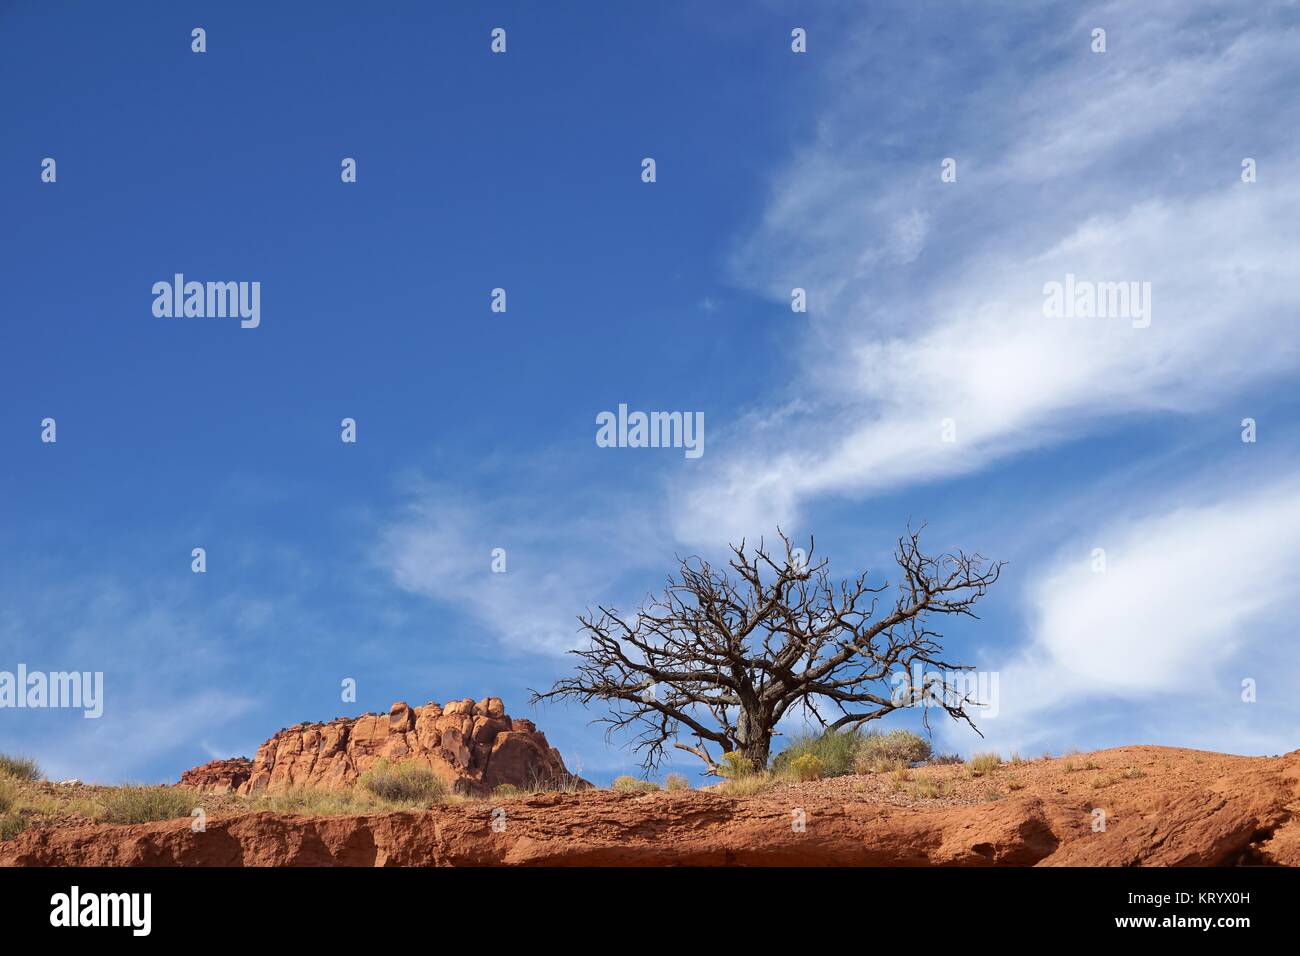 a tree Stock Photo